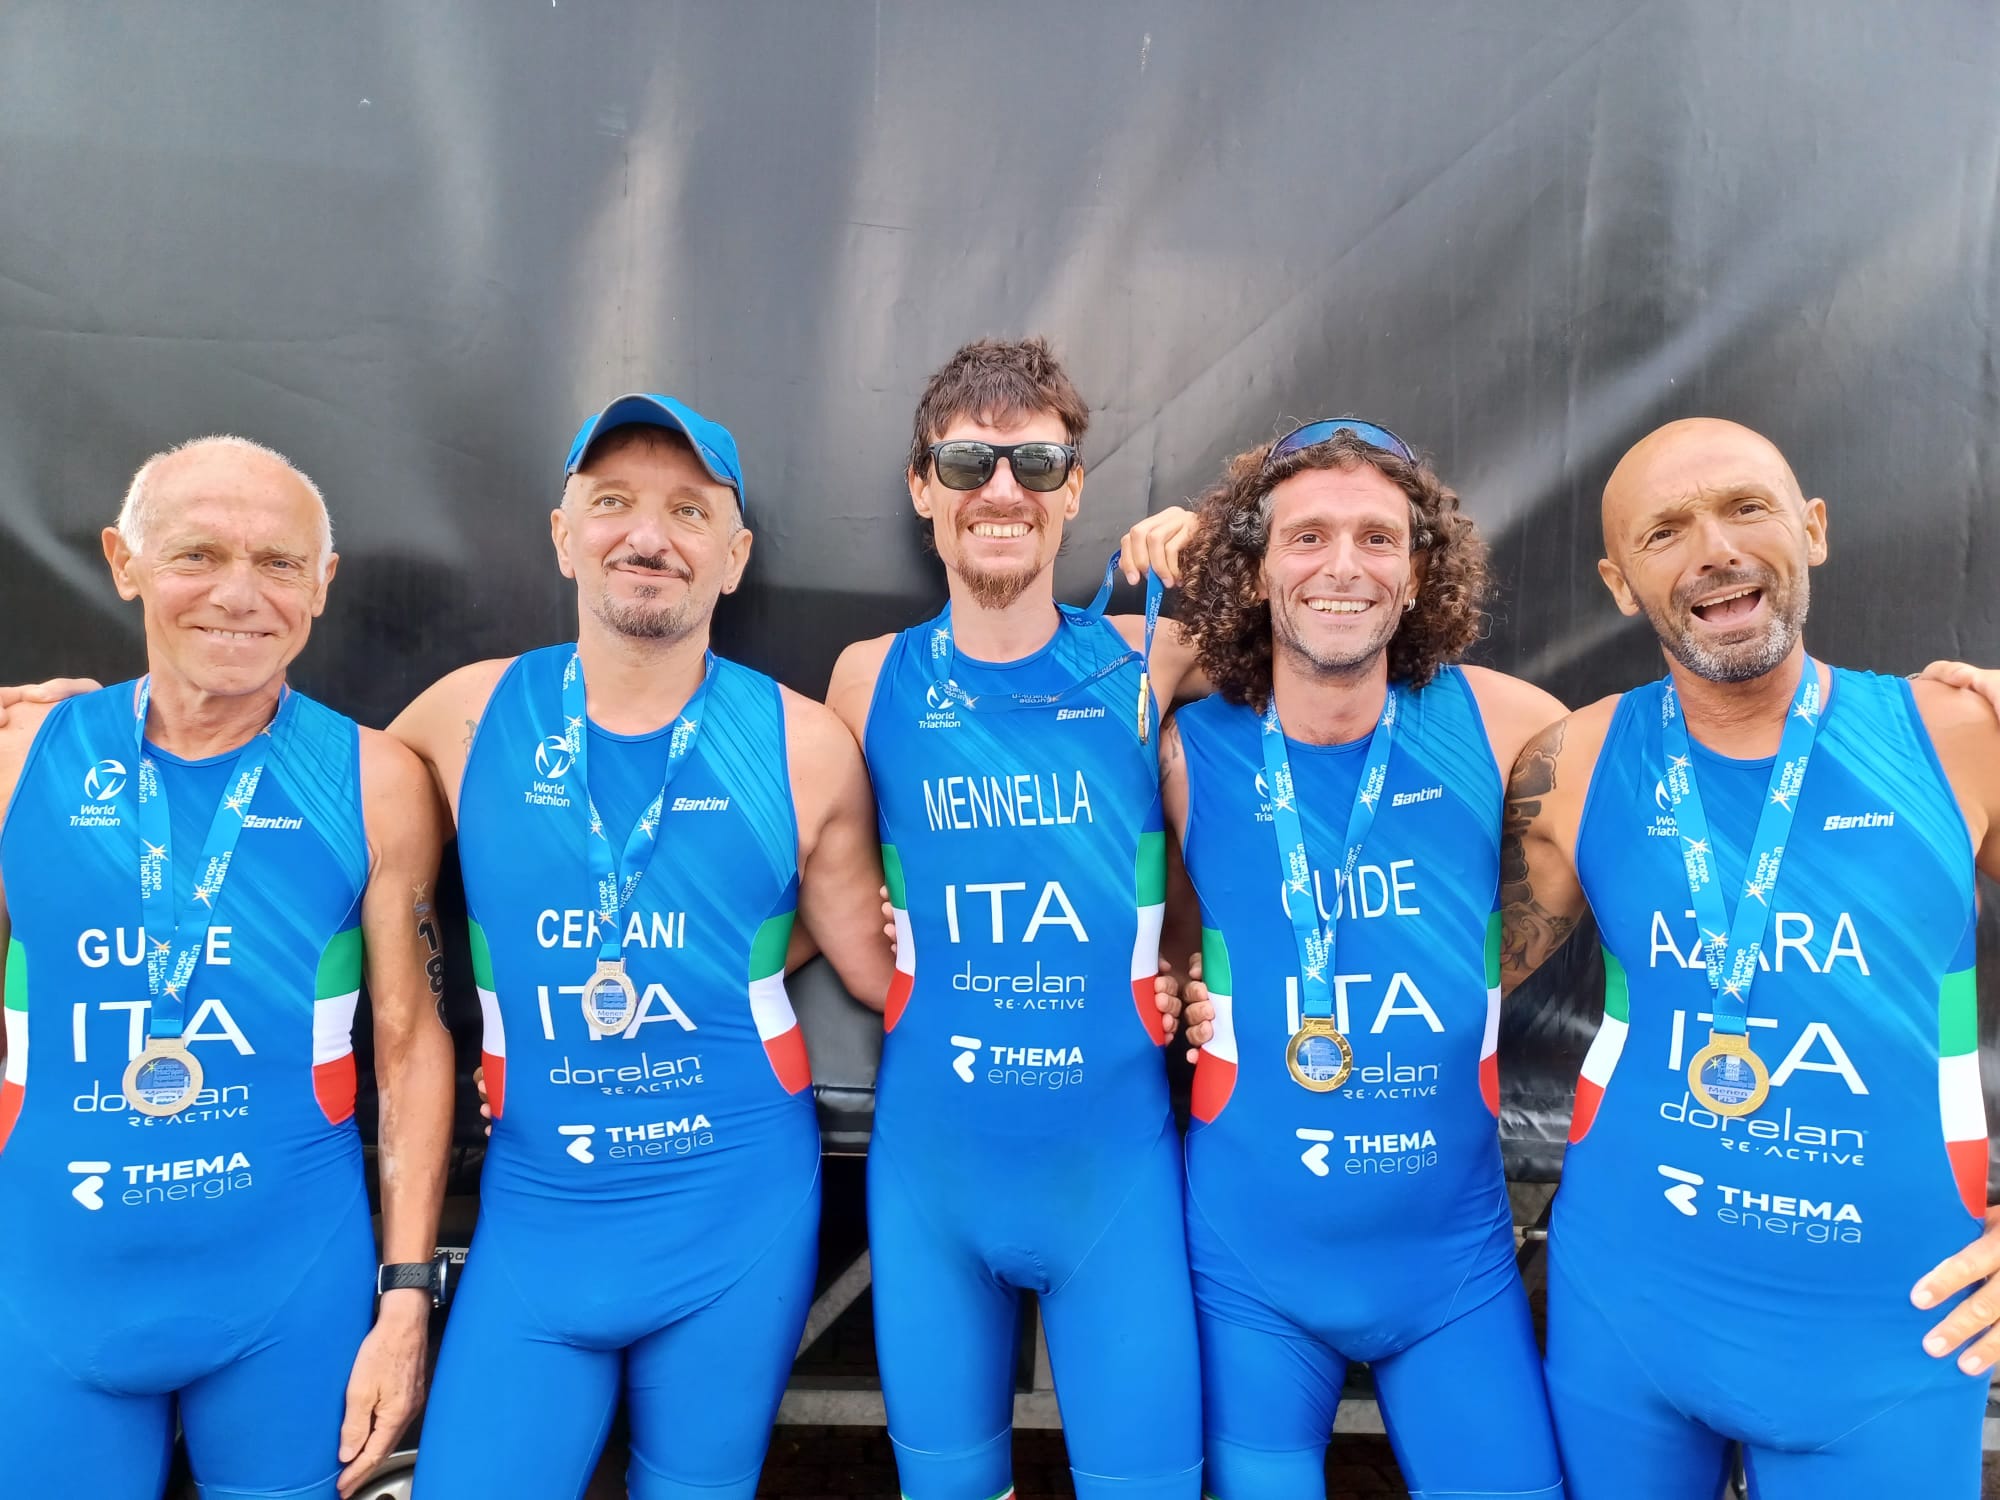 Tre medaglie dal Paratriathlon e tre dal Team Italia Age Group agli Europei di Aquathlon a Menen